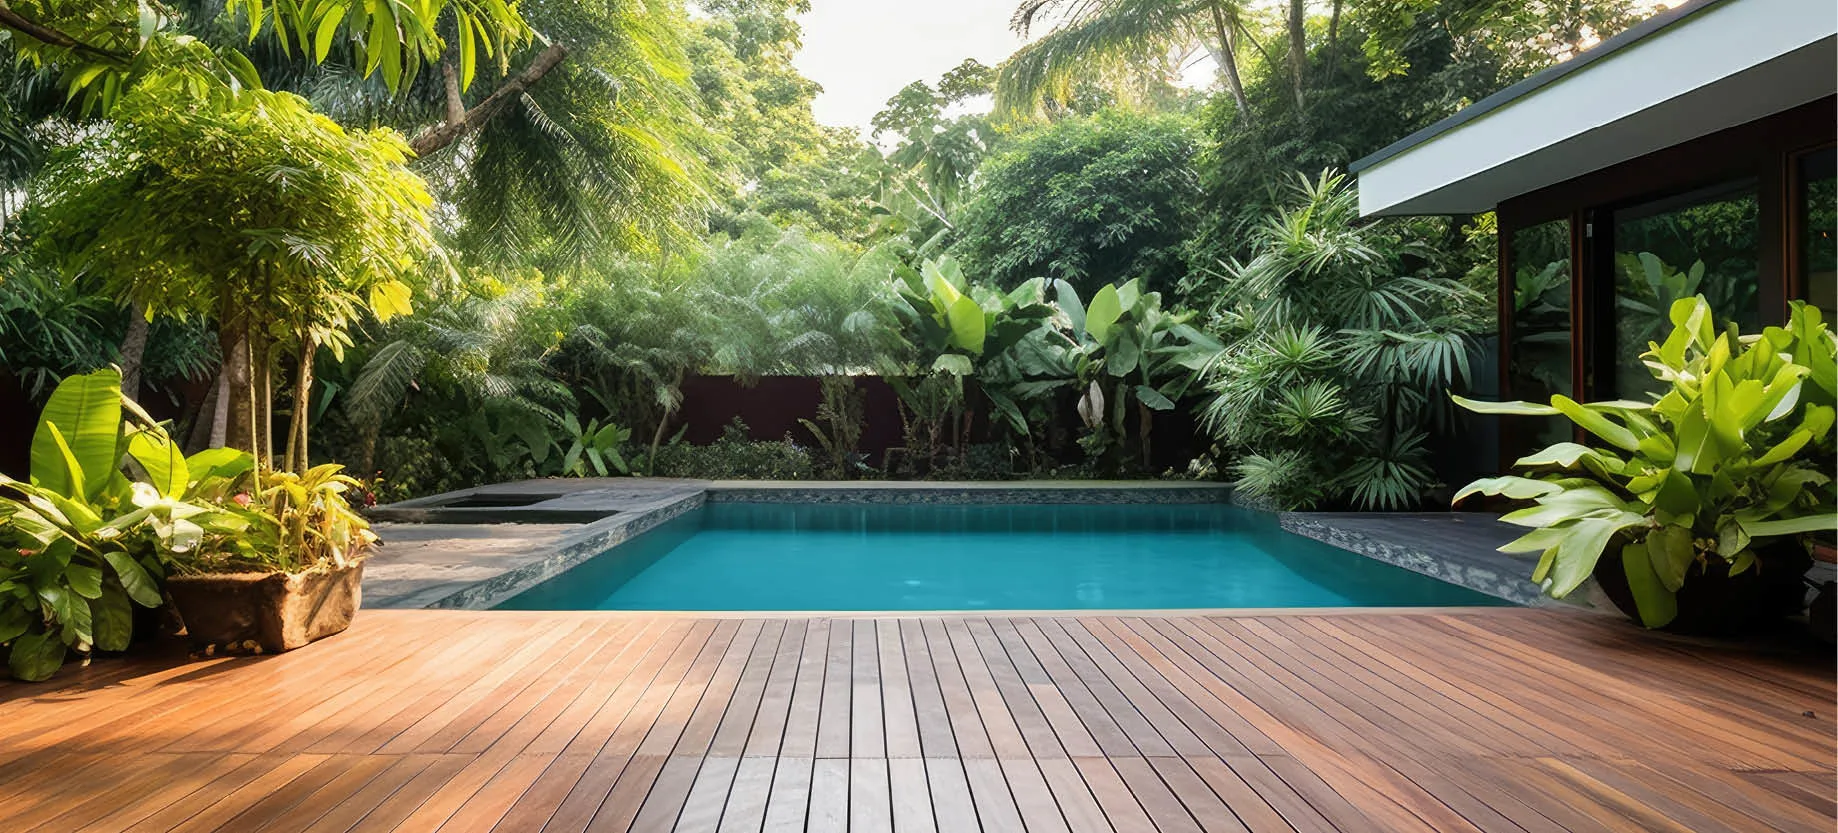 create a poolside paradise